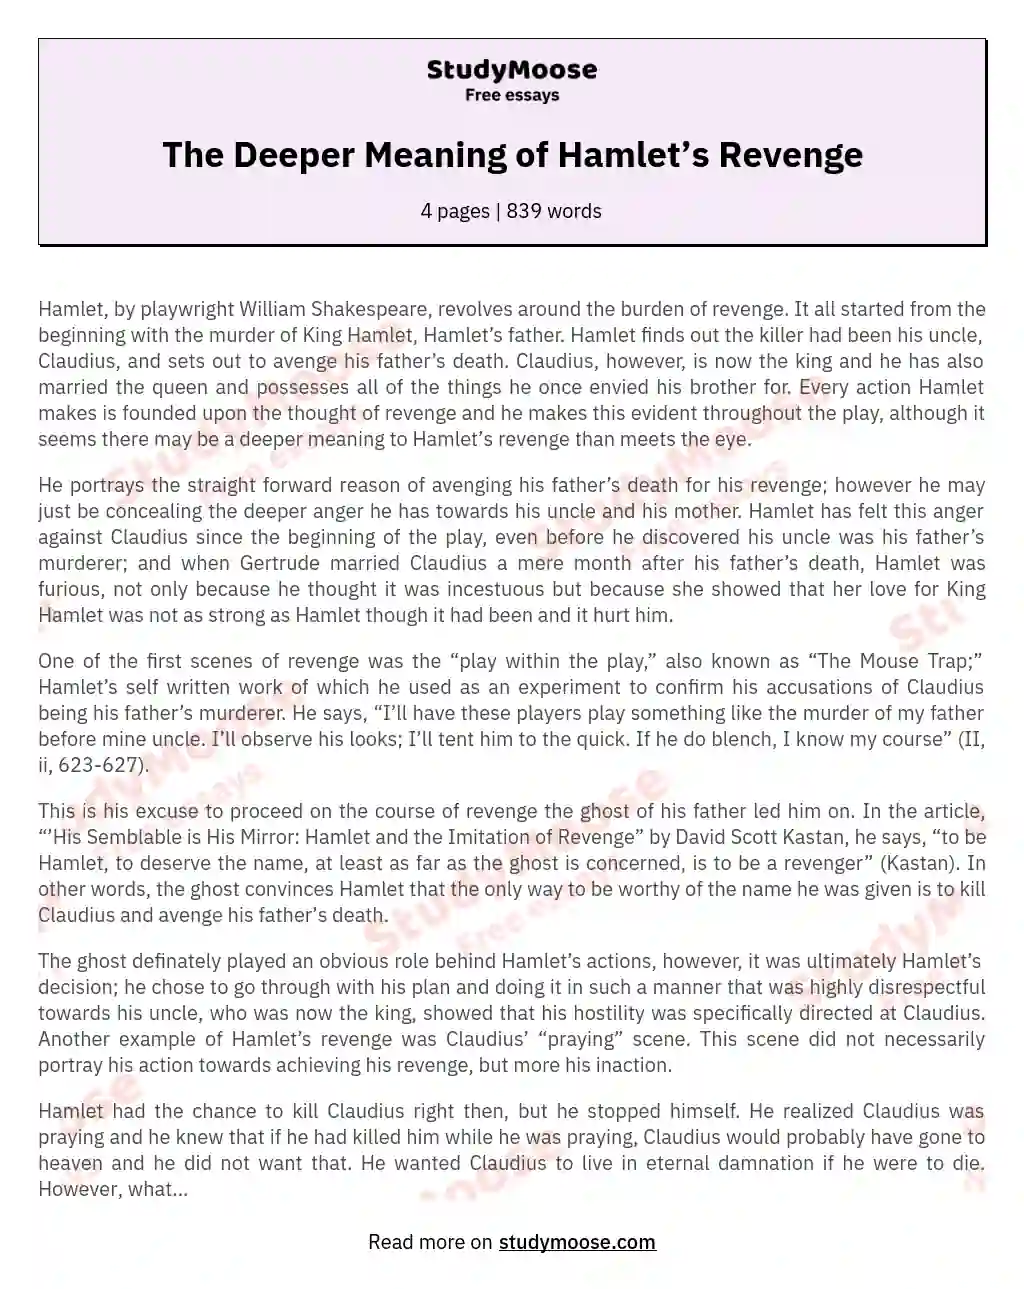 The Deeper Meaning of Hamlet’s Revenge essay